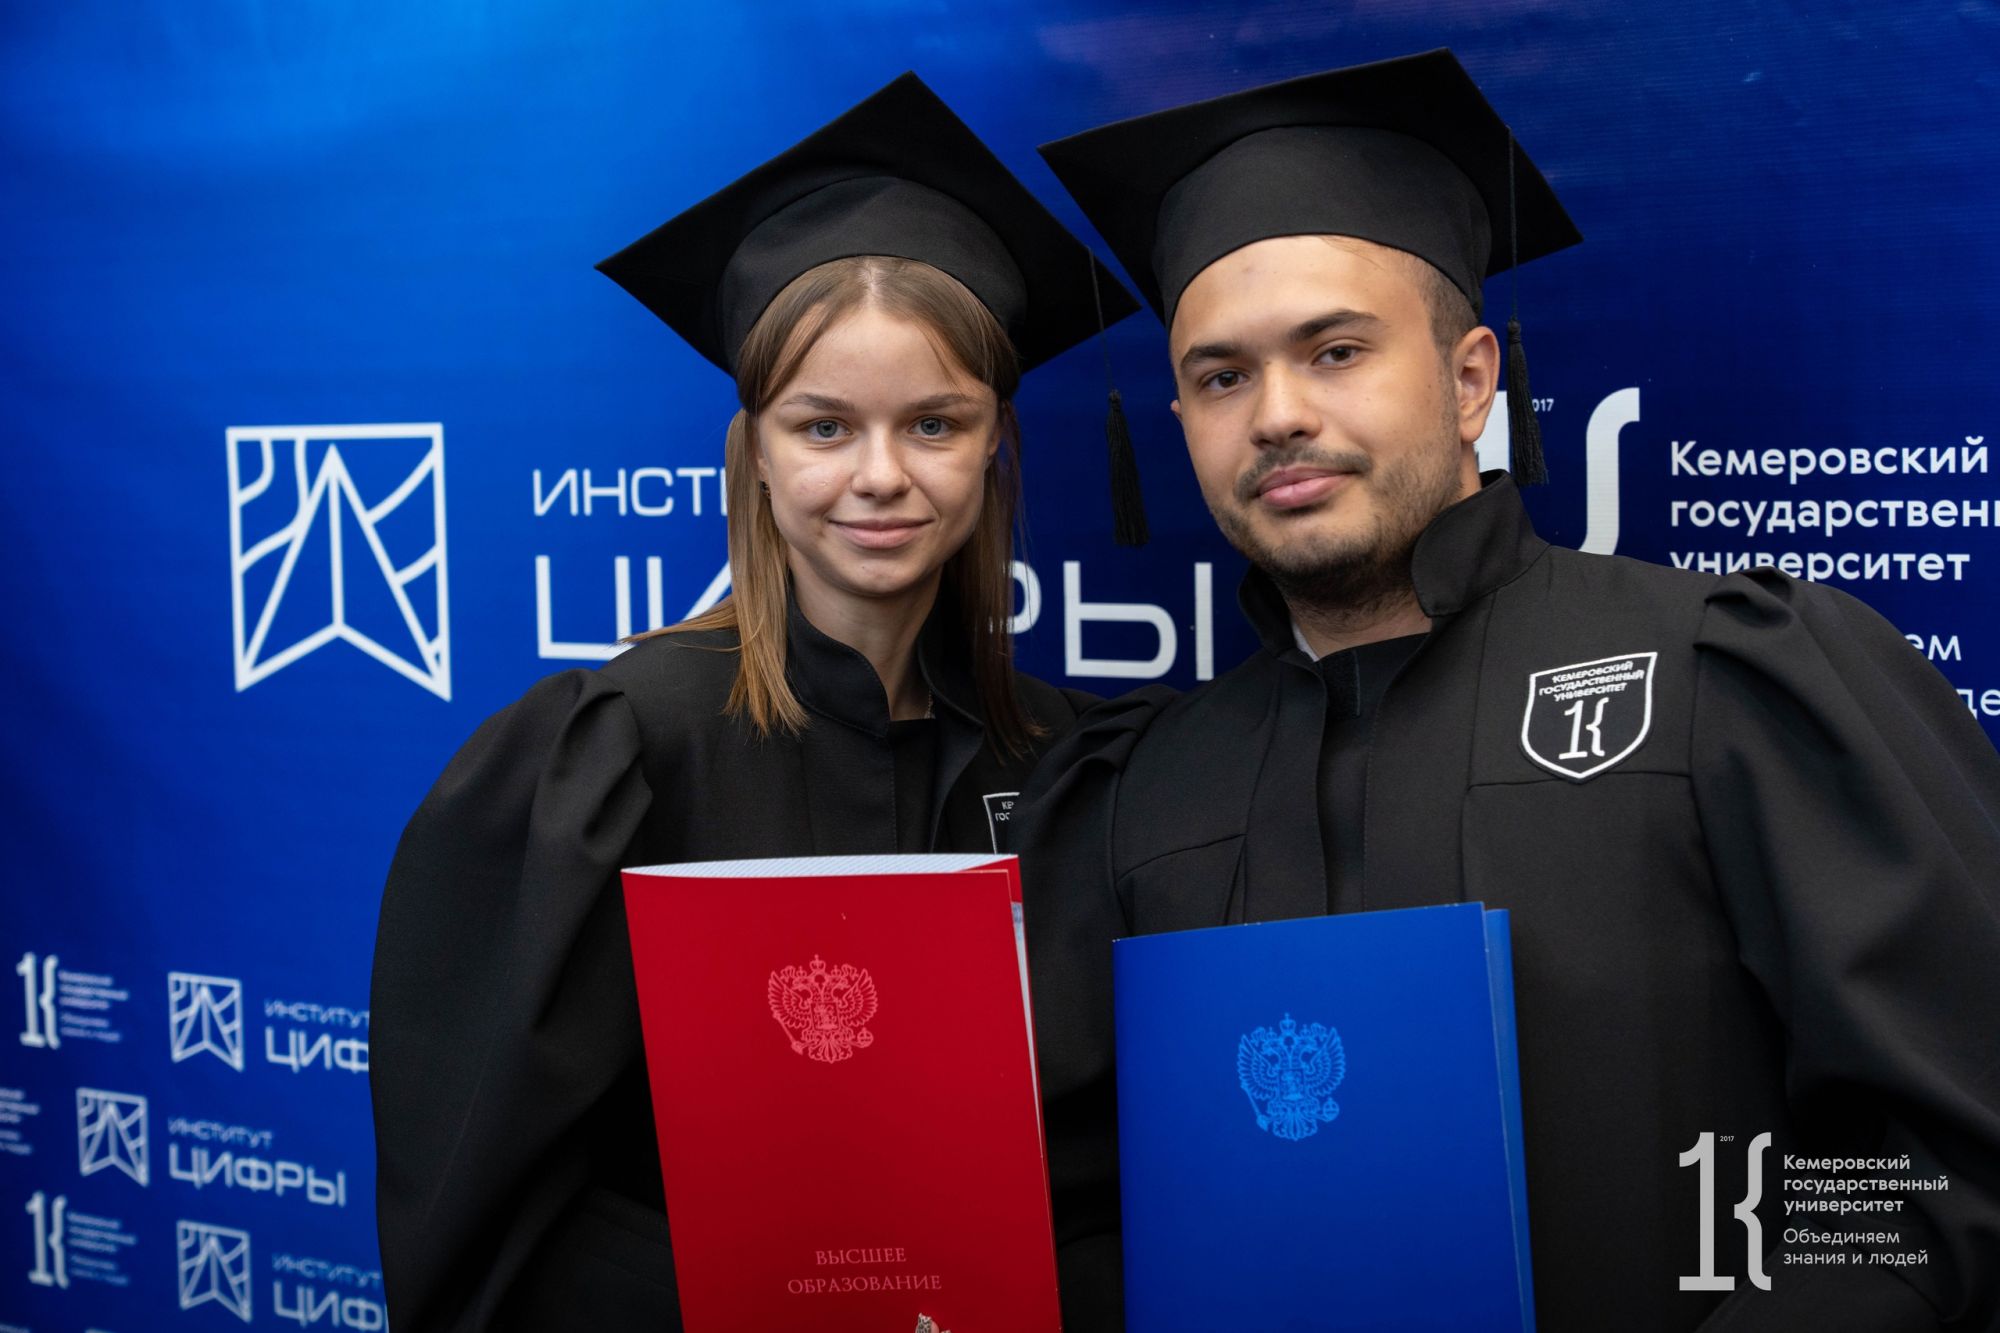 Кемеровский госуниверситет вошел в топ-50 вузов страны по итогам интегрального рейтинга эффективности коммуникаций университетов